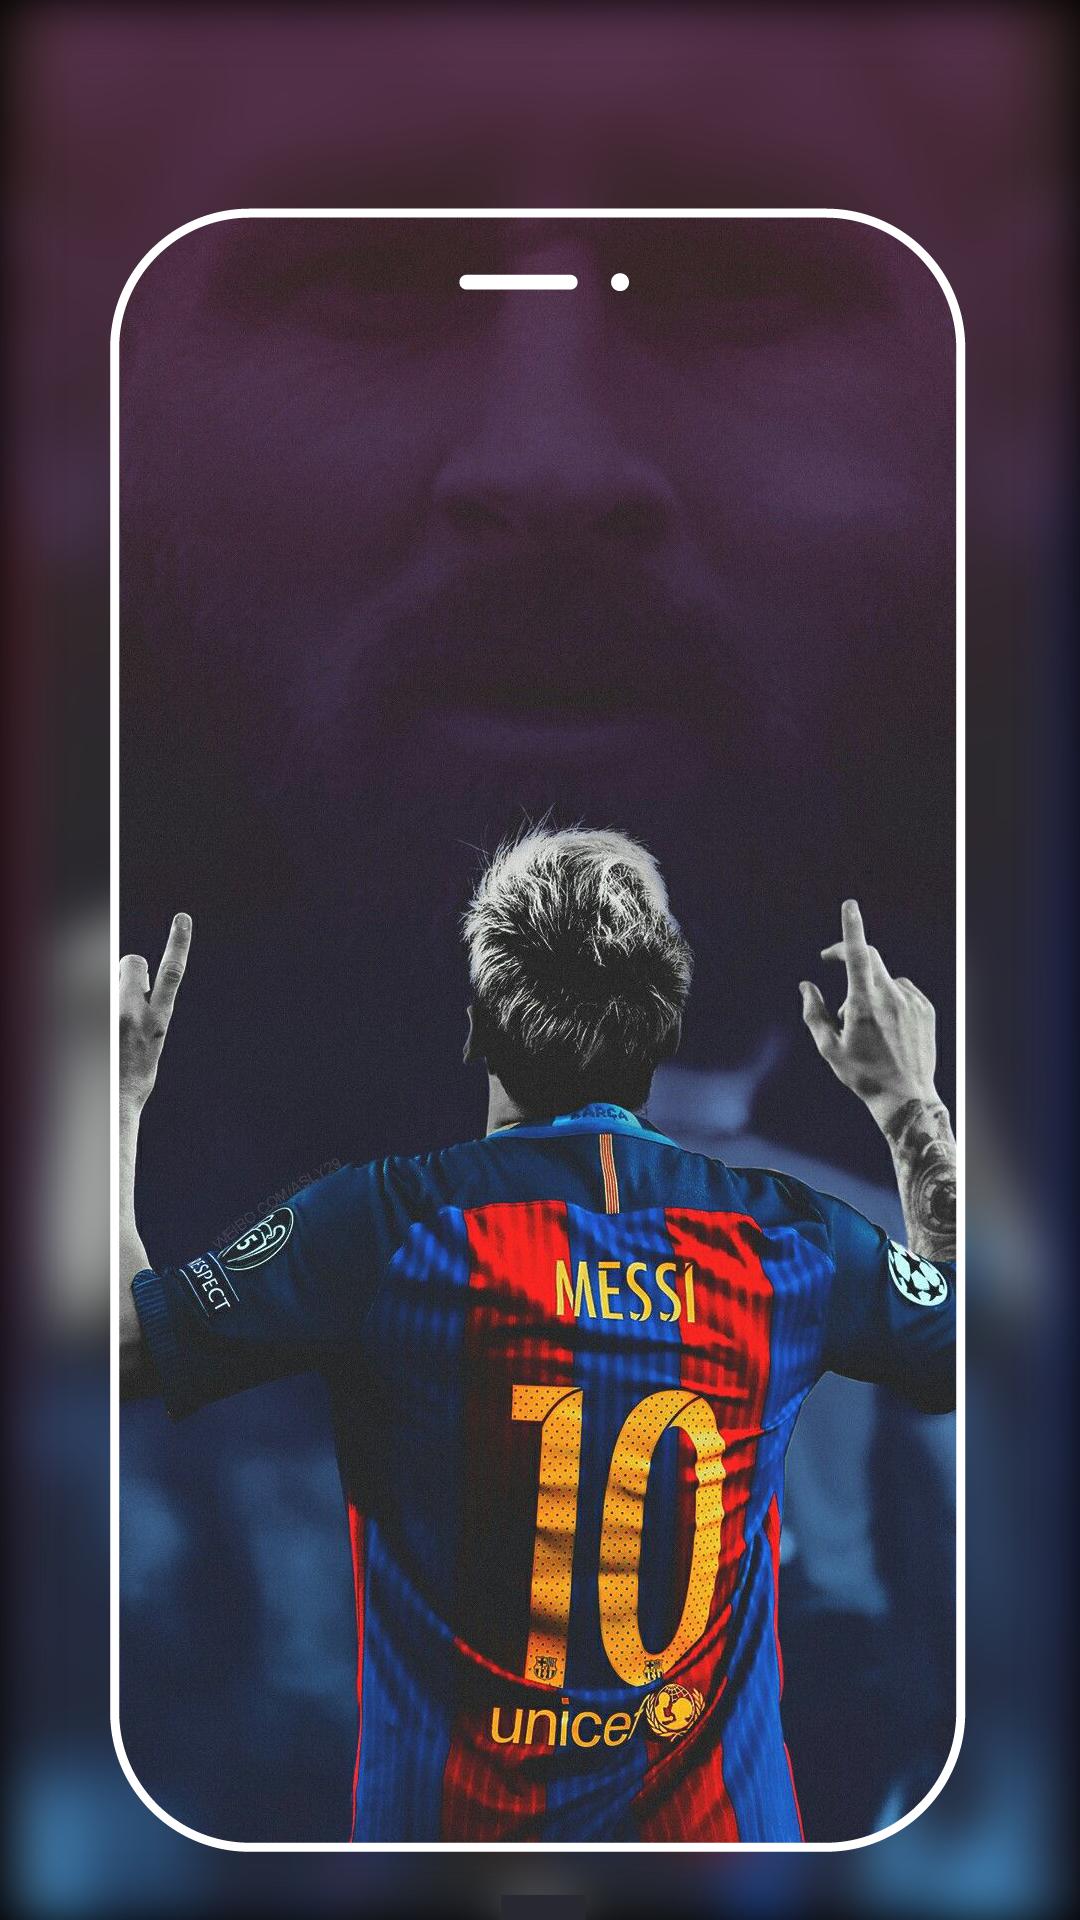 Hình nền Messi trích dẫn là một sự lựa chọn hoàn hảo để thể hiện sự tôn trọng của bạn đối với siêu sao của bóng đá. Với những câu nói truyền cảm hứng và đầy tính cách thể thao, hình nền này sẽ được yêu thích bởi các người hâm mộ bóng đá và những người yêu thích Messi.